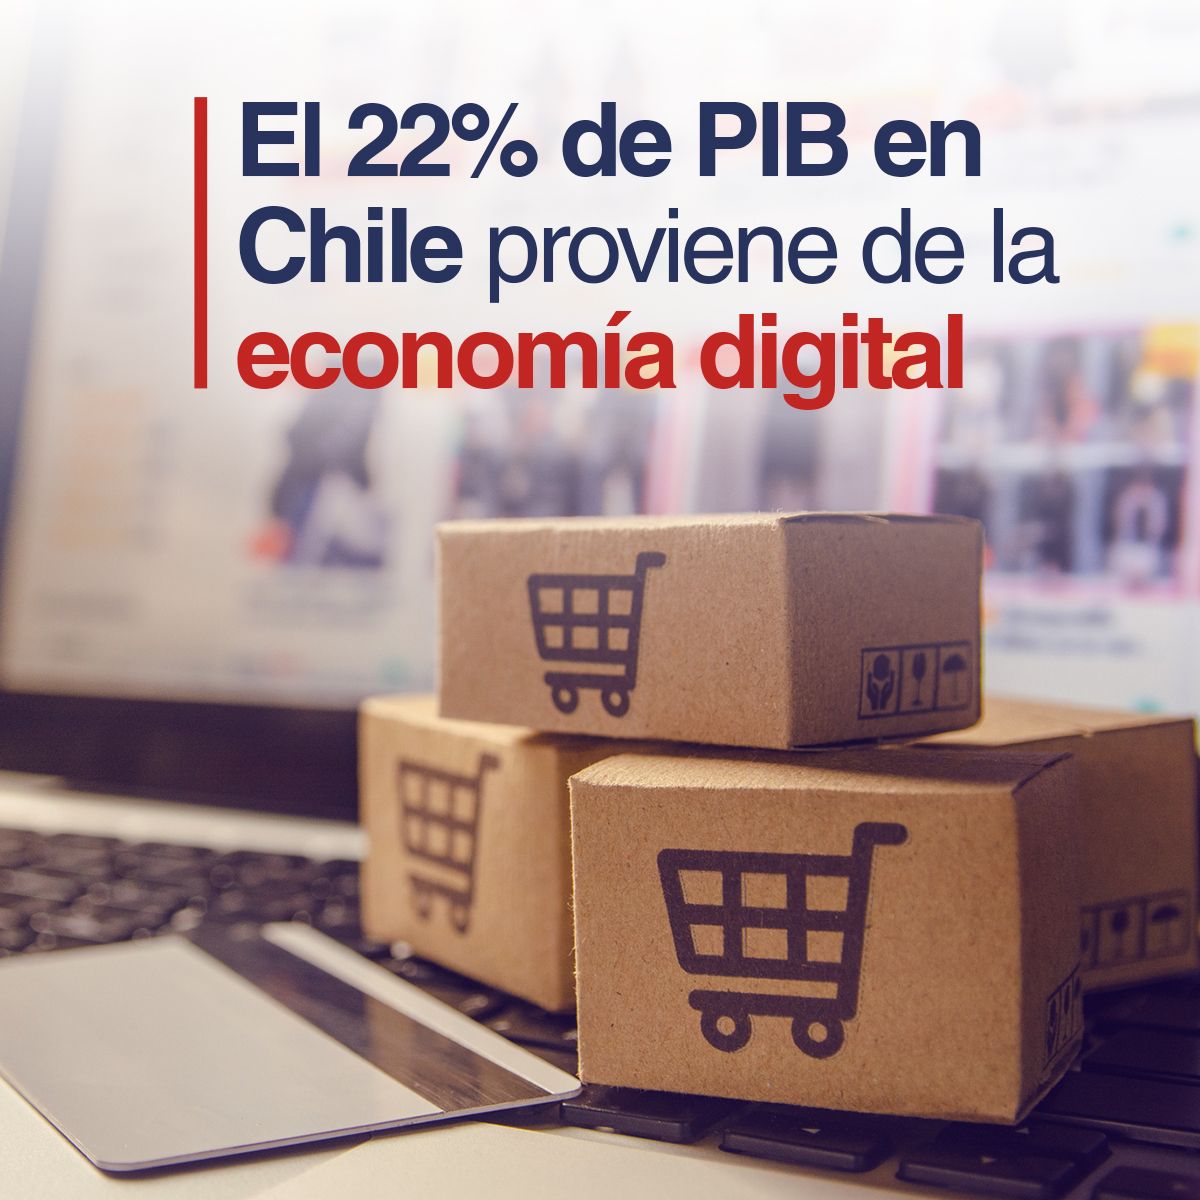 El 22% de PIB en Chile proviene de la economía digital